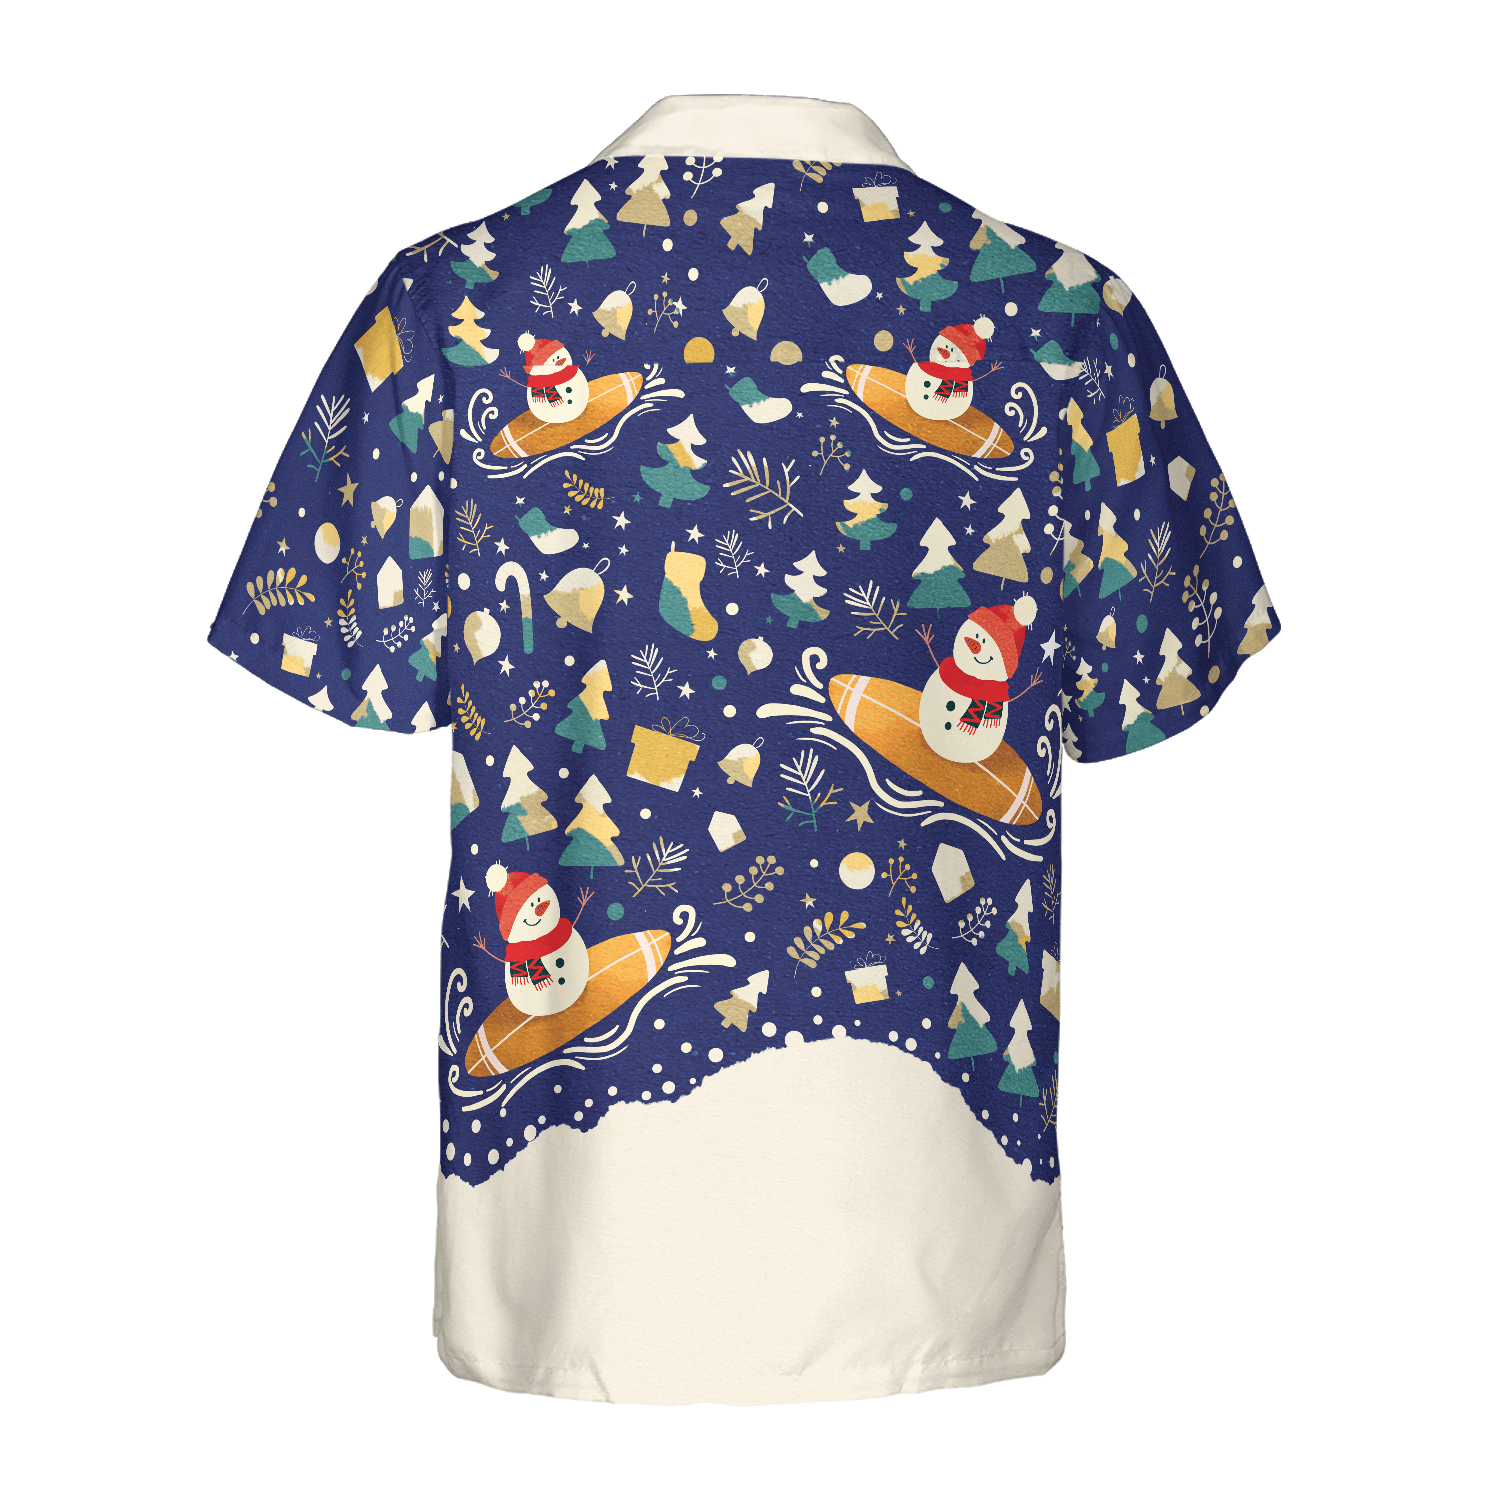 Hyperfavor Christmas Snowman Surfing Hawaiian shirt, Christmas Shirts Short Sleeve Button Down Shirt For Men And Women